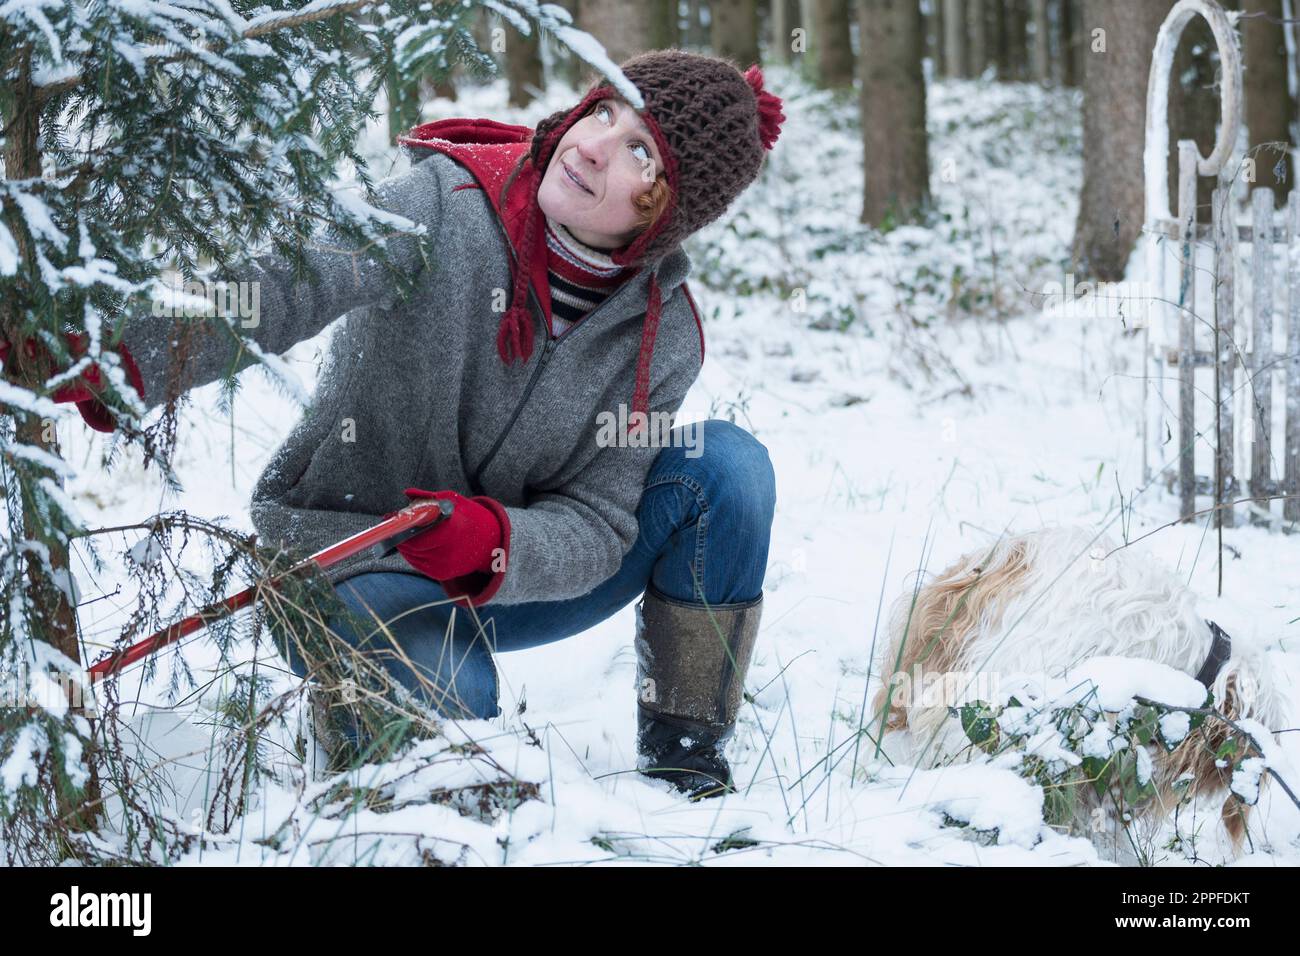 Frau, die im Winter einen weihnachtsbaum im verschneiten Wald schneidet, Bayern, Deutschland Stockfoto